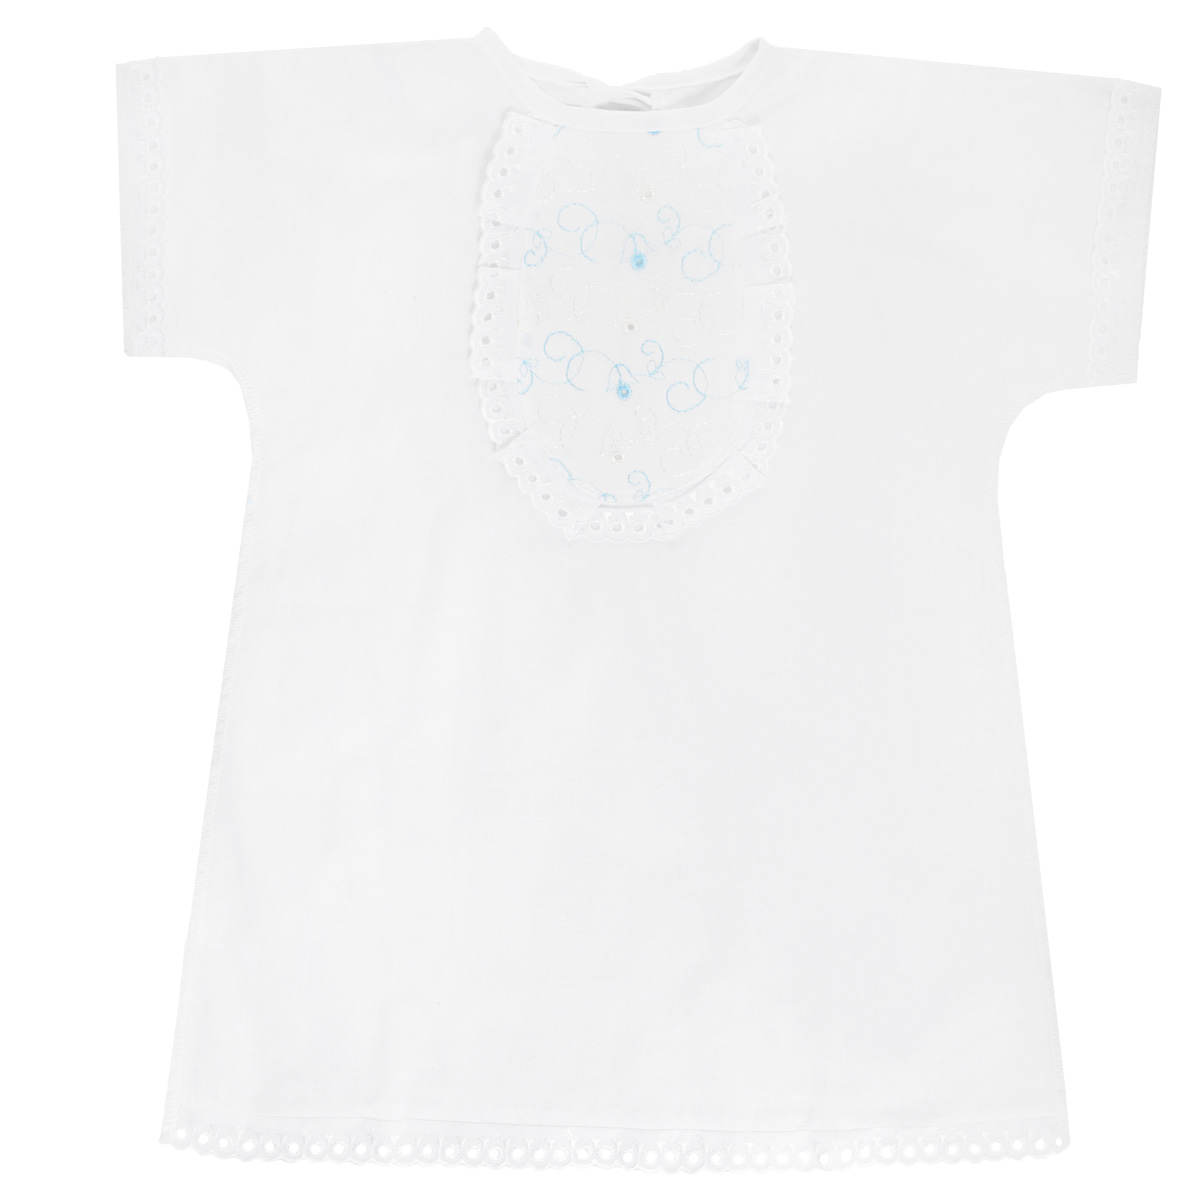 Крестильная рубашка детская Трон-плюс, цвет: белый, голубой. 1135. Размер 68, 6 месяцев